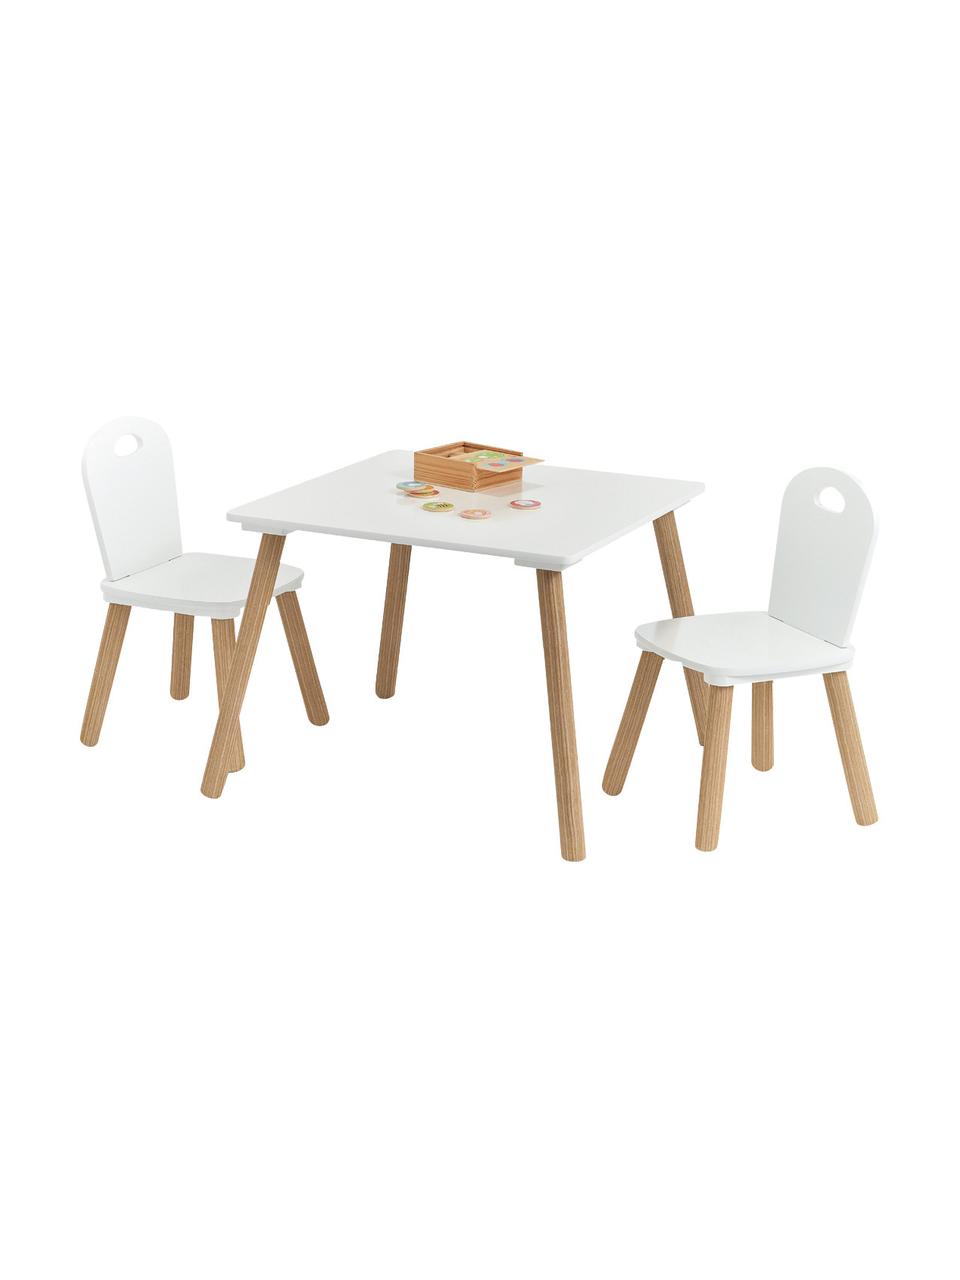 Kindertisch-Set Scandi, 3-tlg., Beine: Kiefer mit Kunststoffbesc, Weiss, Helles Holz, Set mit verschiedenen Grössen